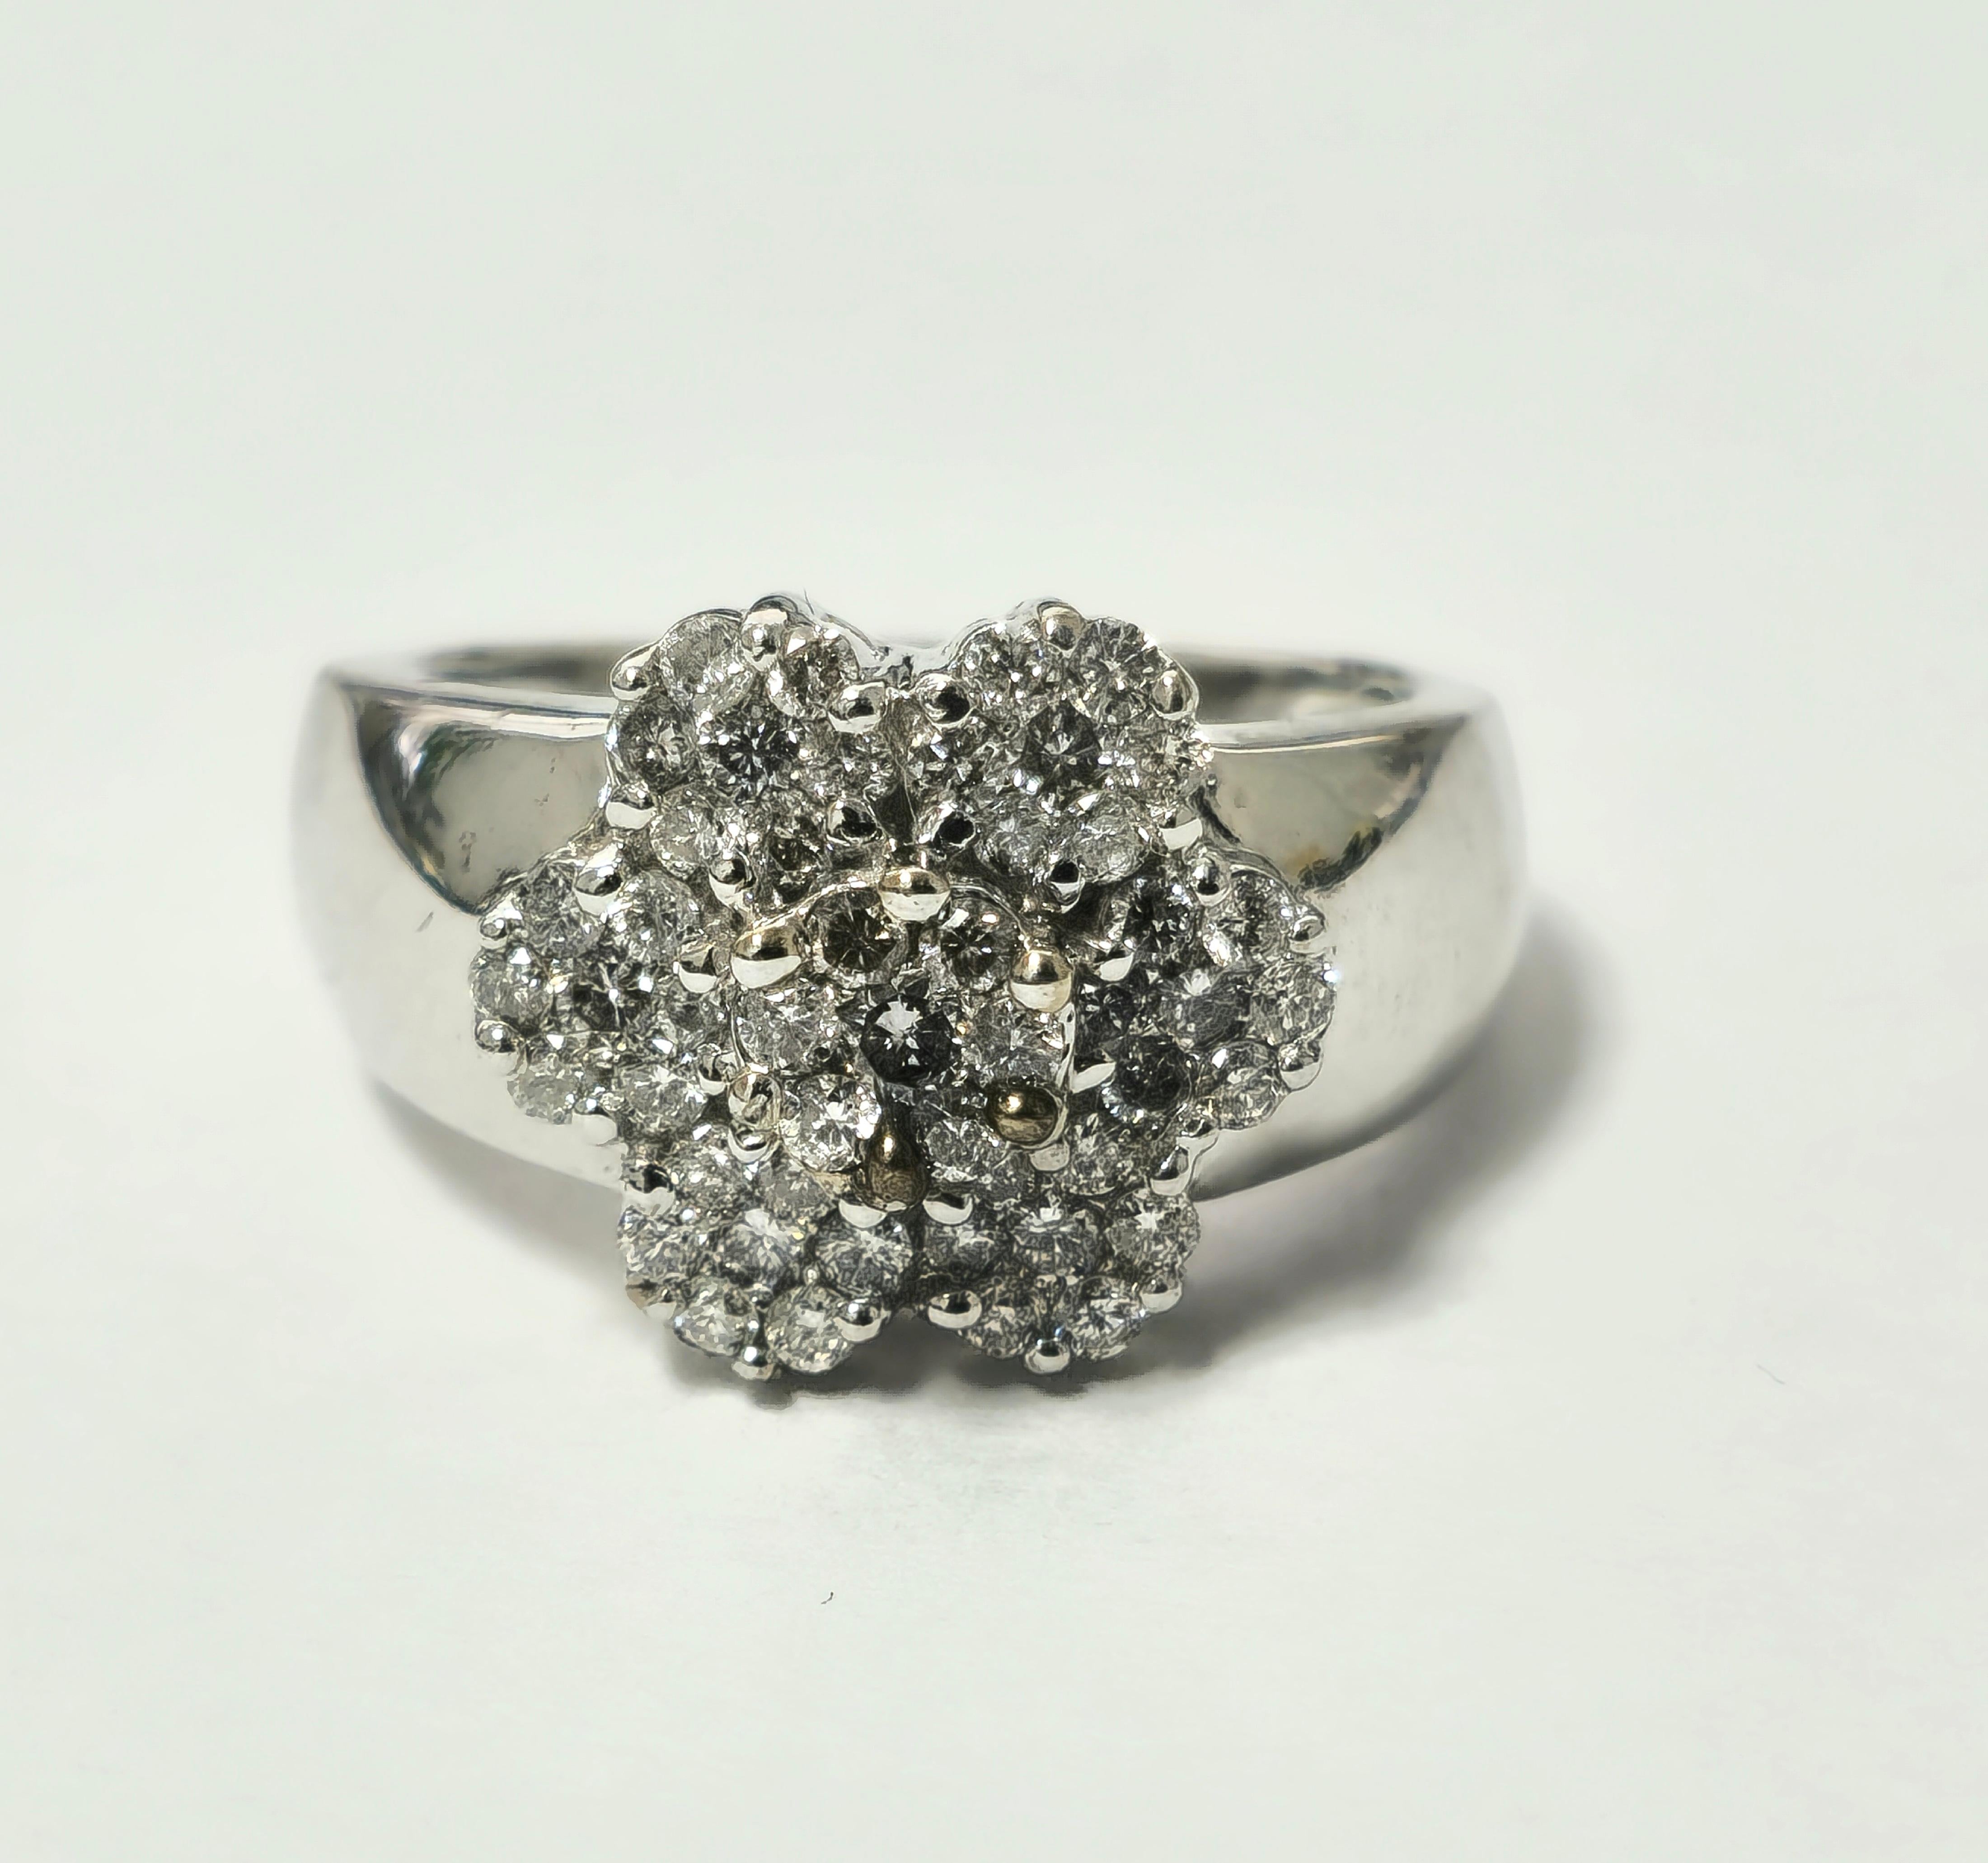 Zelebrieren Sie die Schönheit zarter Blütenblätter mit unserem exquisiten Vintage-Diamantring für Damen, der aus 14 Karat Weißgold gefertigt ist. Geschmückt mit runden Diamanten im Brillantschliff in einer Zackenfassung, strahlt dieses